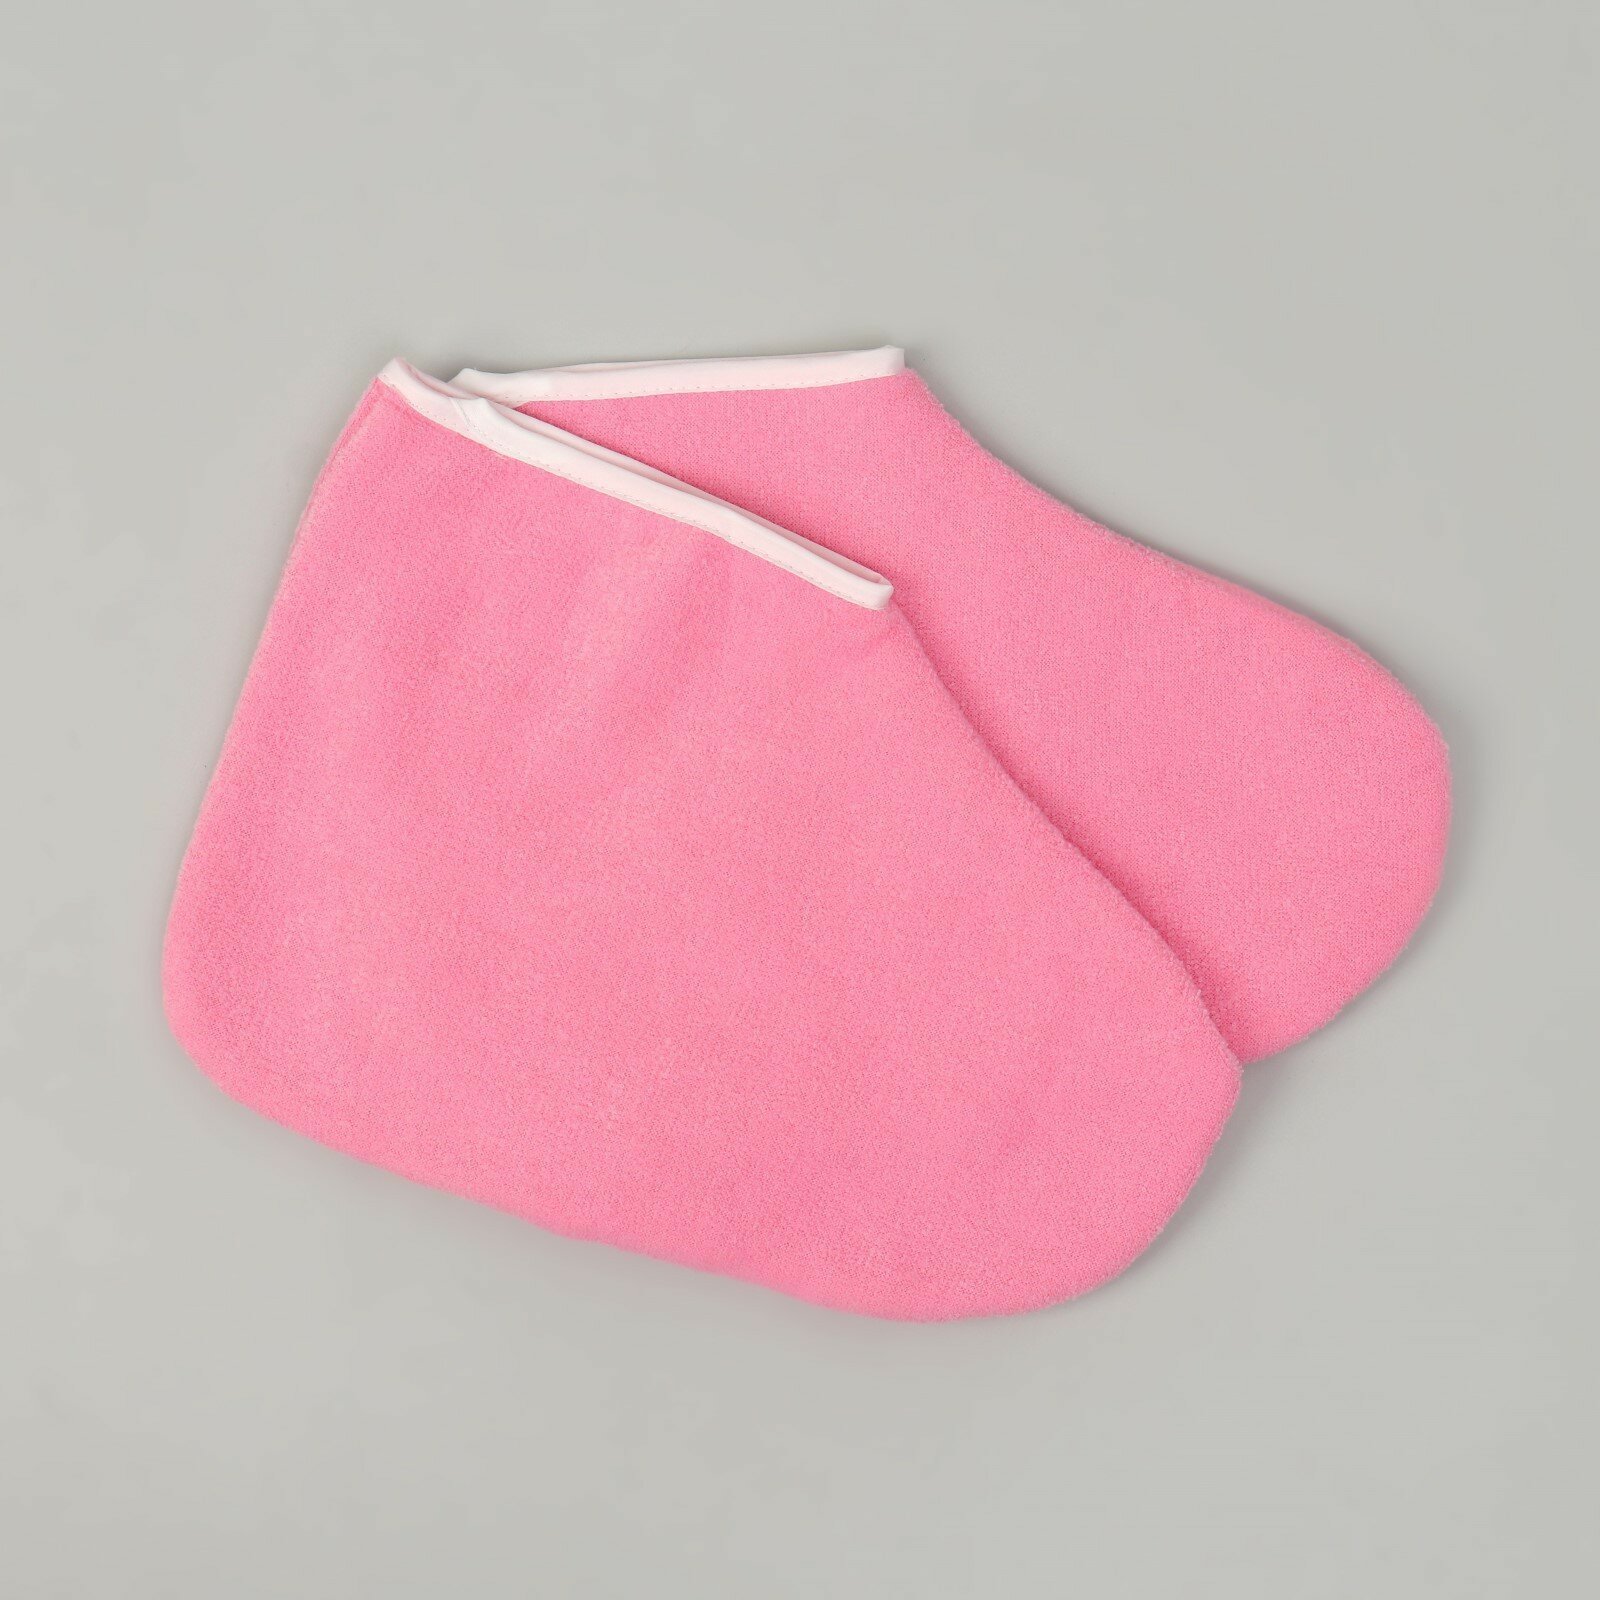 Носочки для парафинотерапии, цвет розовый